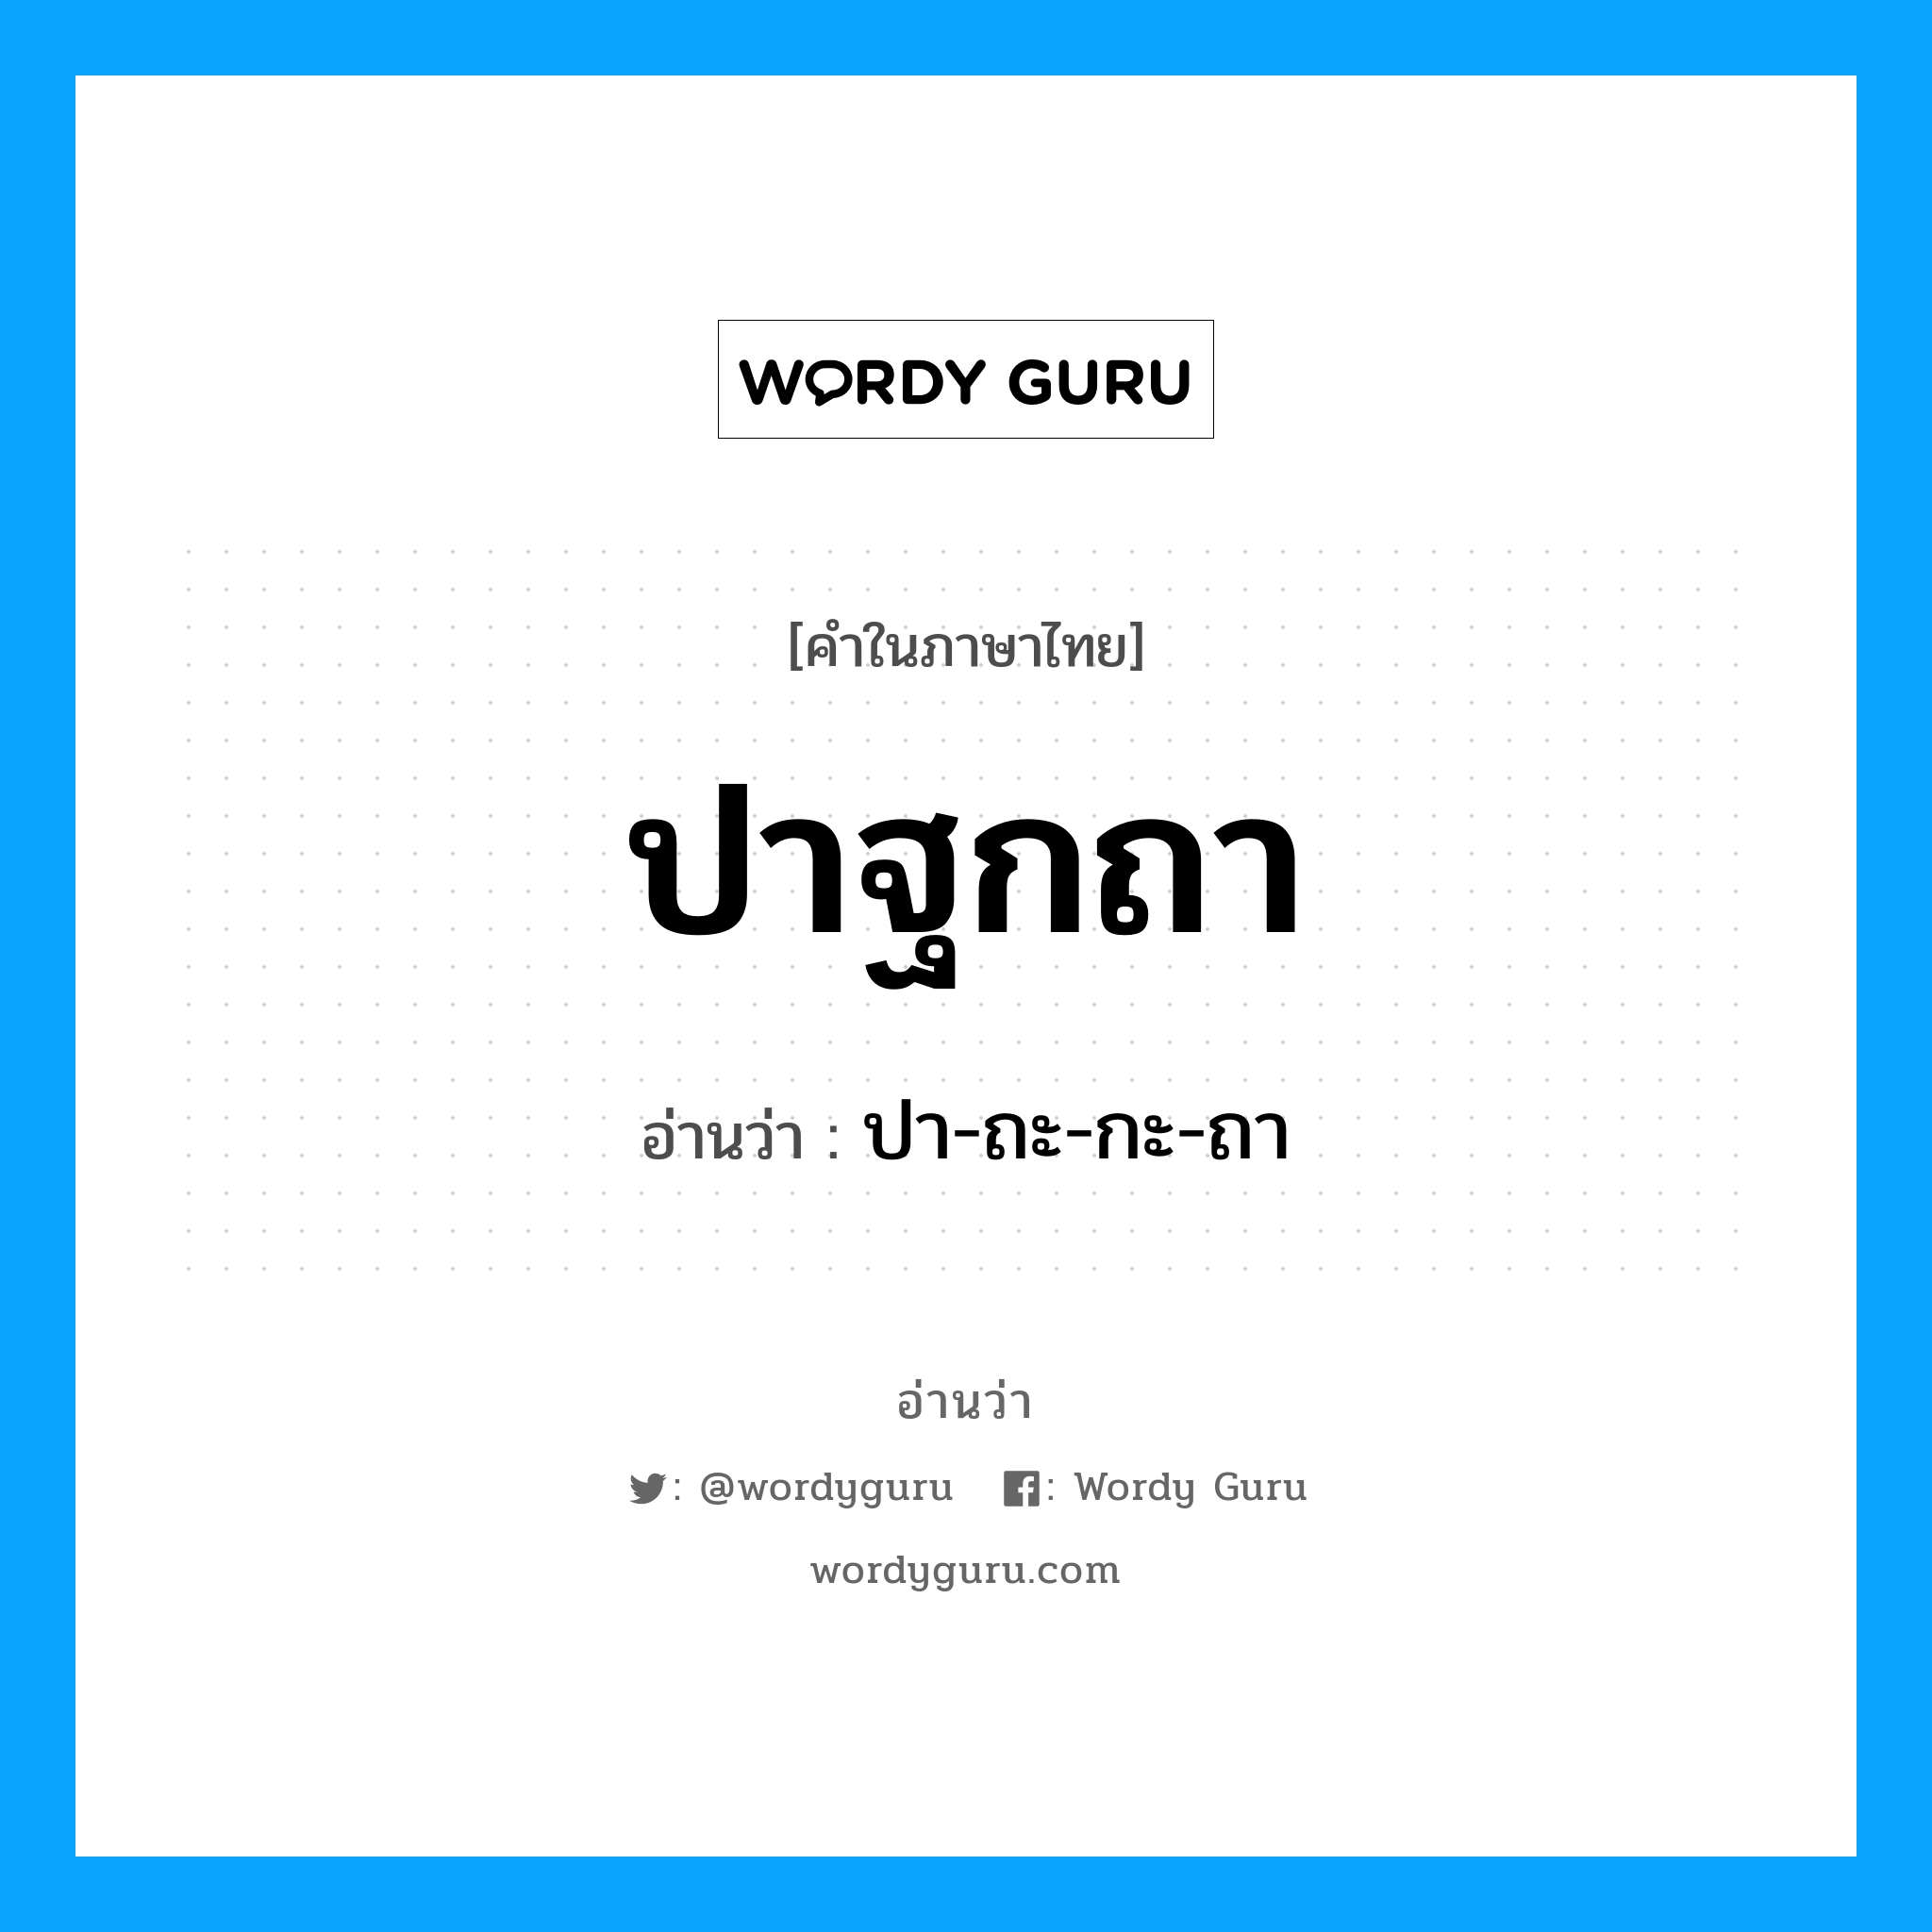 ปาฐกถา อ่านว่า?, คำในภาษาไทย ปาฐกถา อ่านว่า ปา-ถะ-กะ-ถา